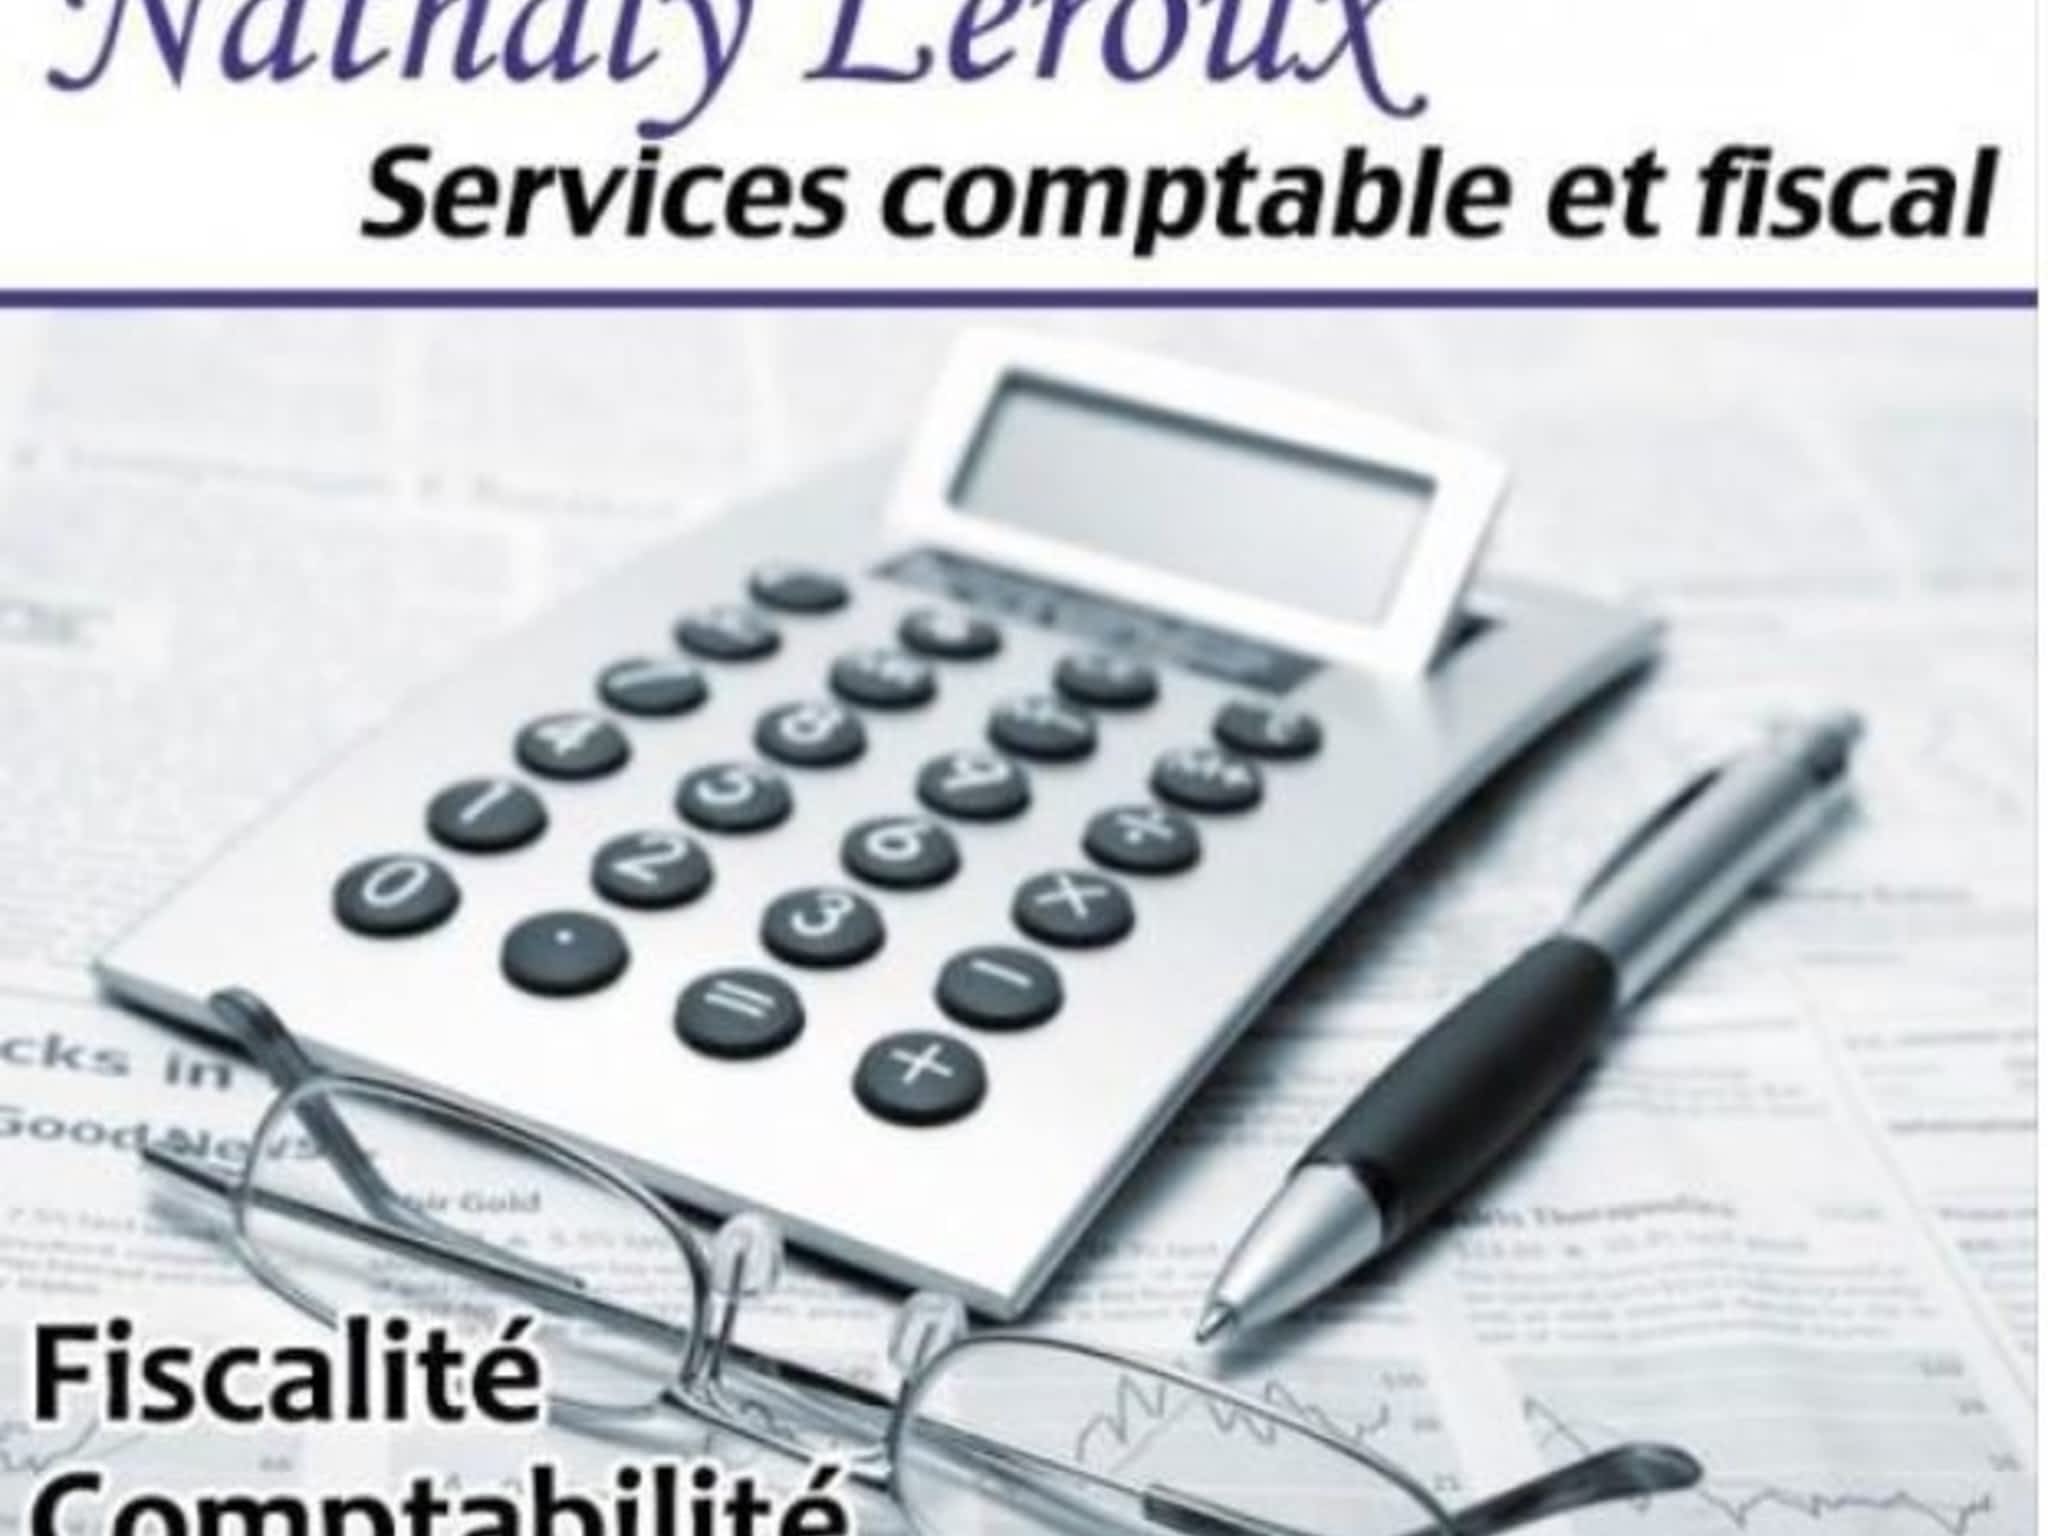 photo Nathaly Leroux Services Comptables et Fiscals